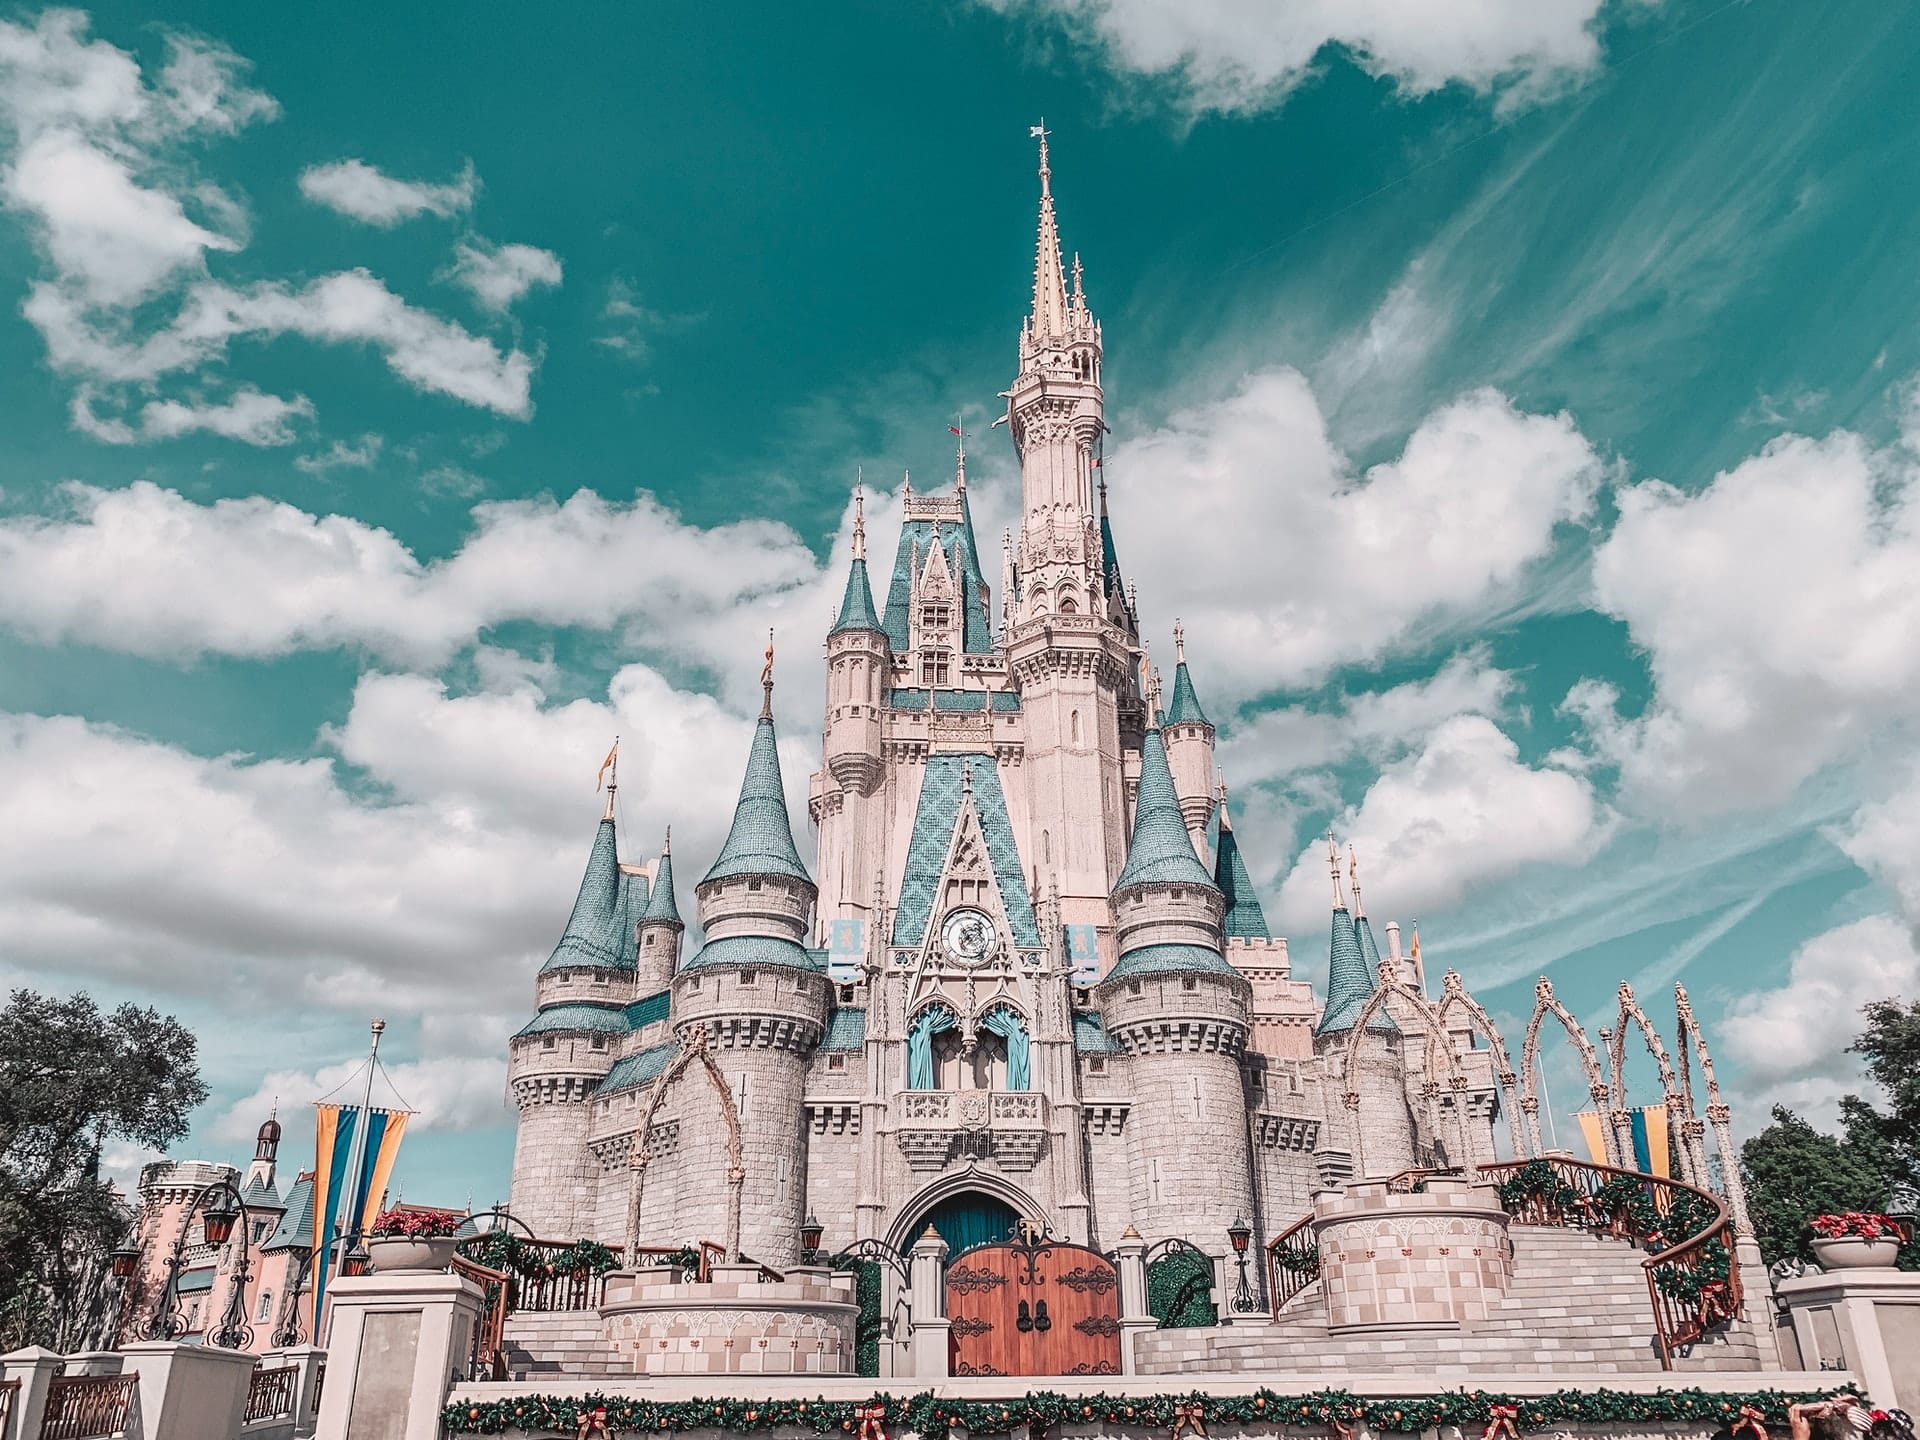 vista do Castelo da Cinderela na Disney em Orlando com grandes torres pontudas e um céu azulado com nuvens brancas